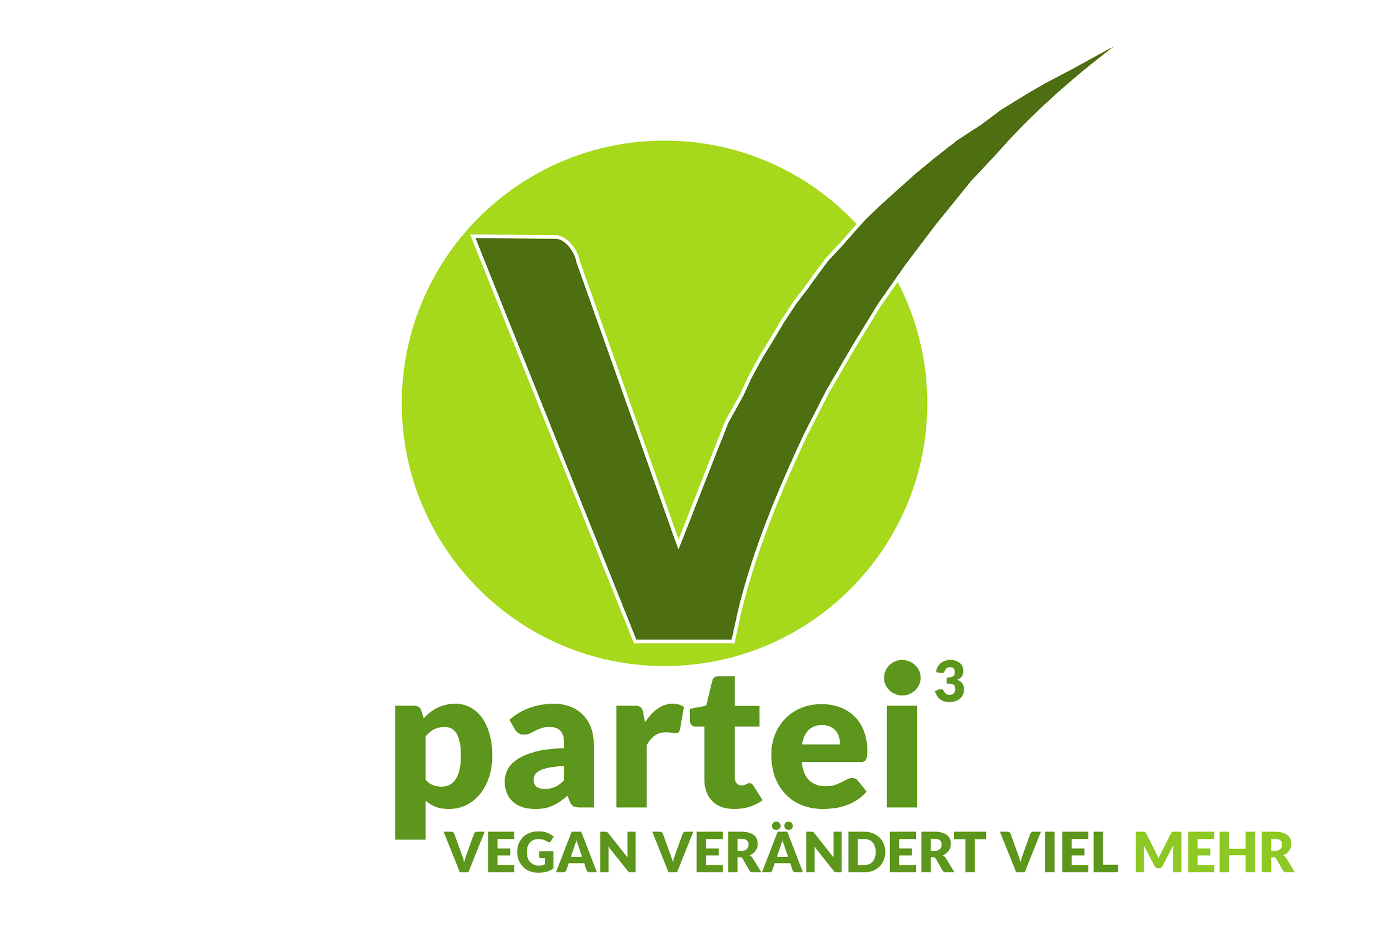 V-Partei3 bei der Bundestagswahl (Vegan verändert viel mehr)